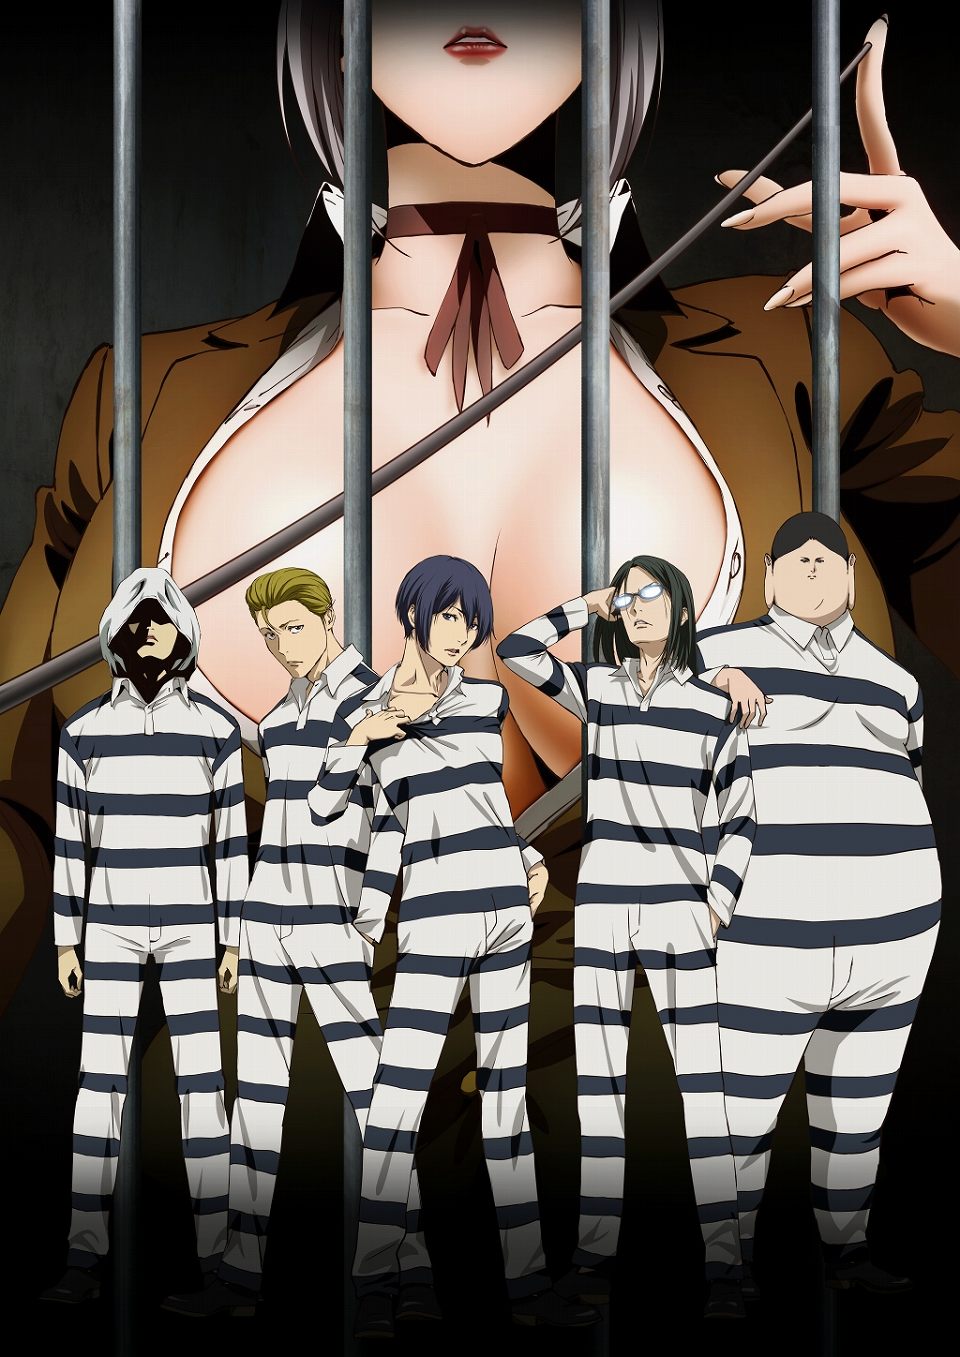 監獄学園 15年夏にtvアニメが放送決定 メインキャラクターを確認できるpvも公開に Anime Recorder